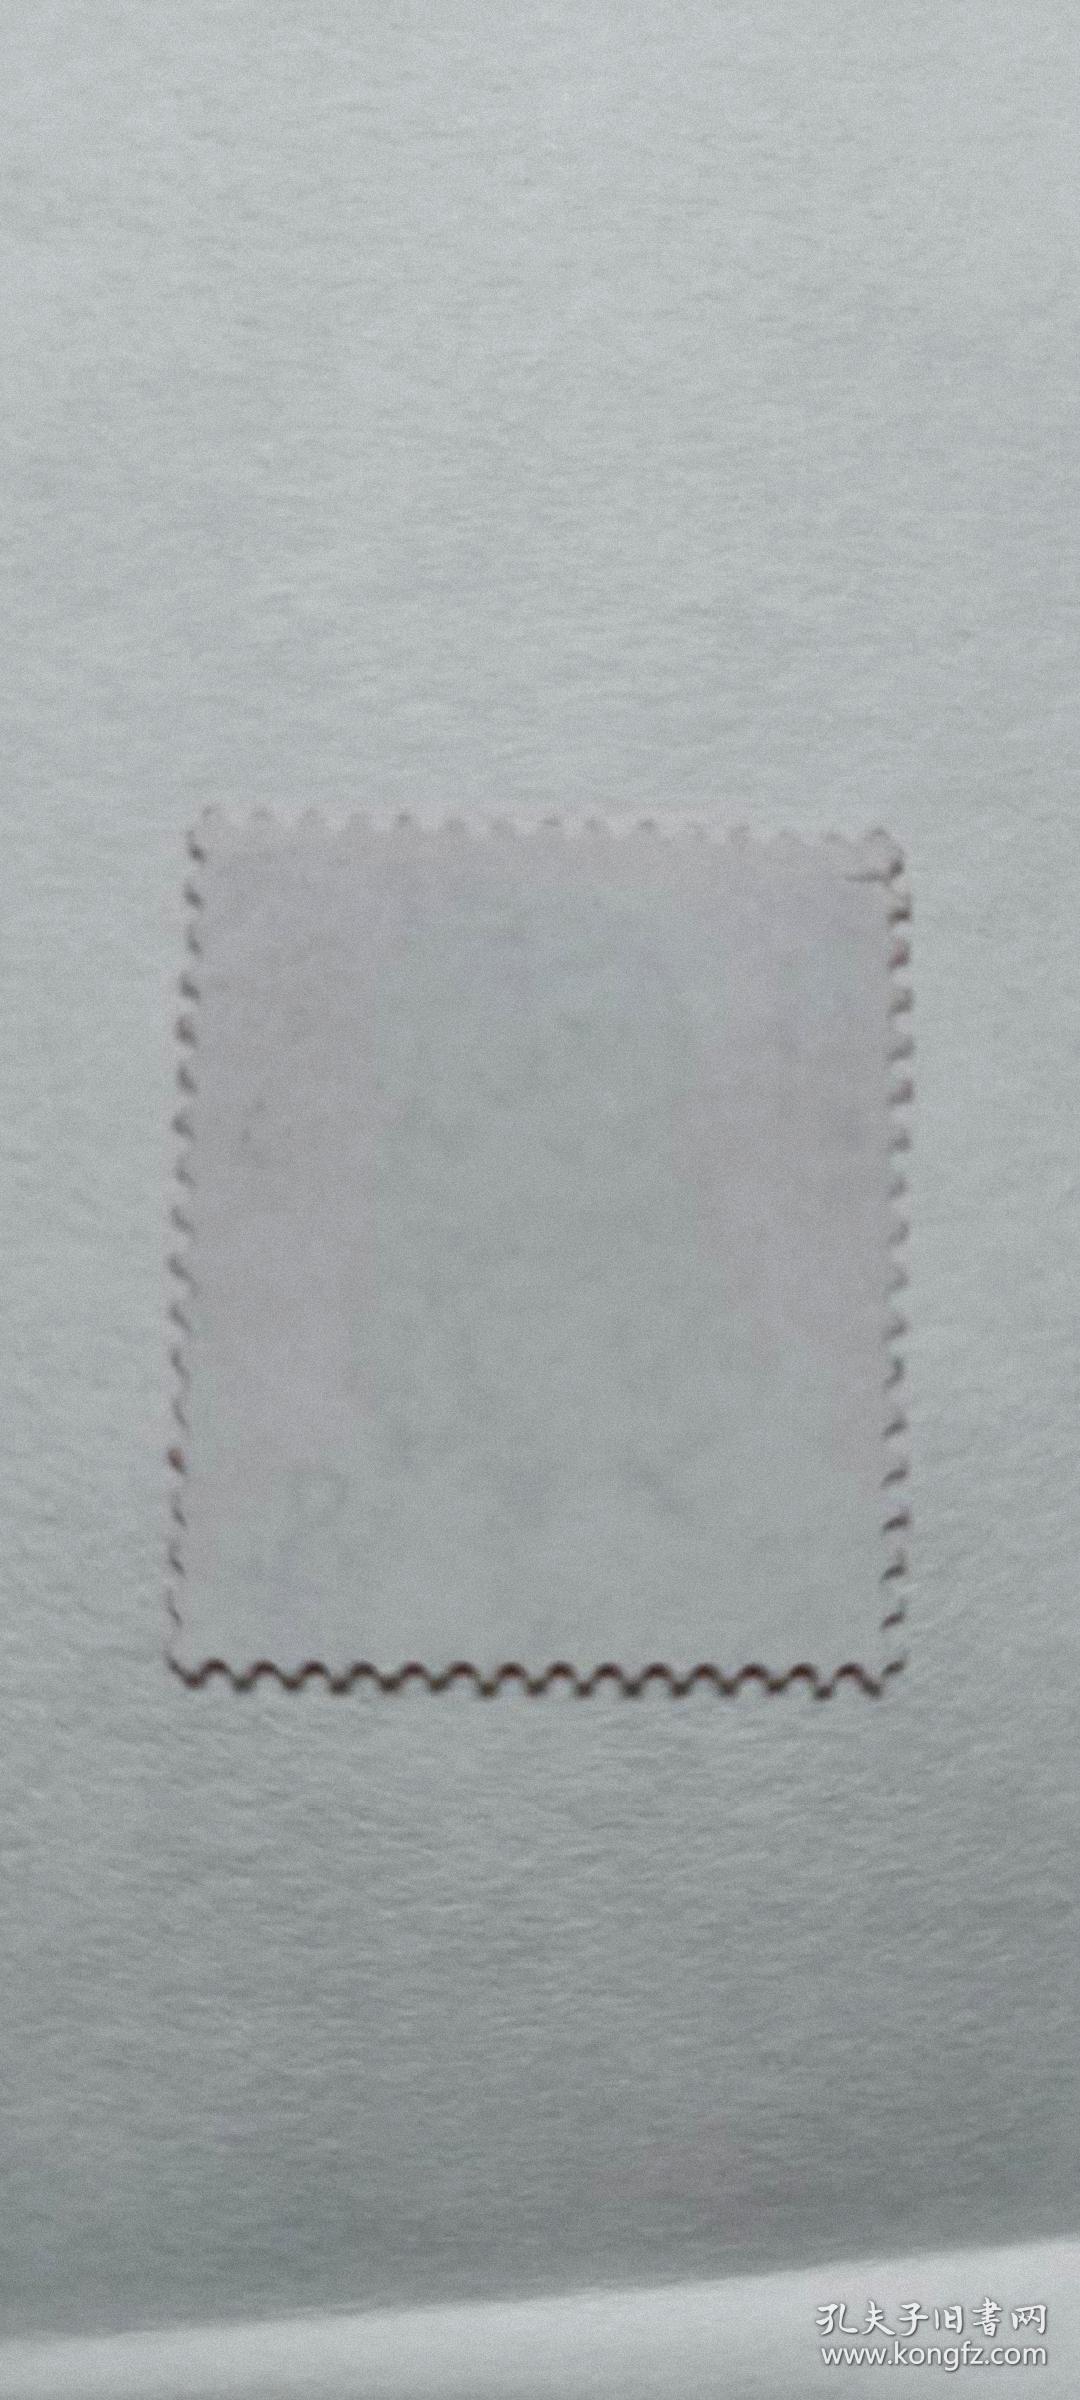 集邮册一本内含1980年猴票一枚